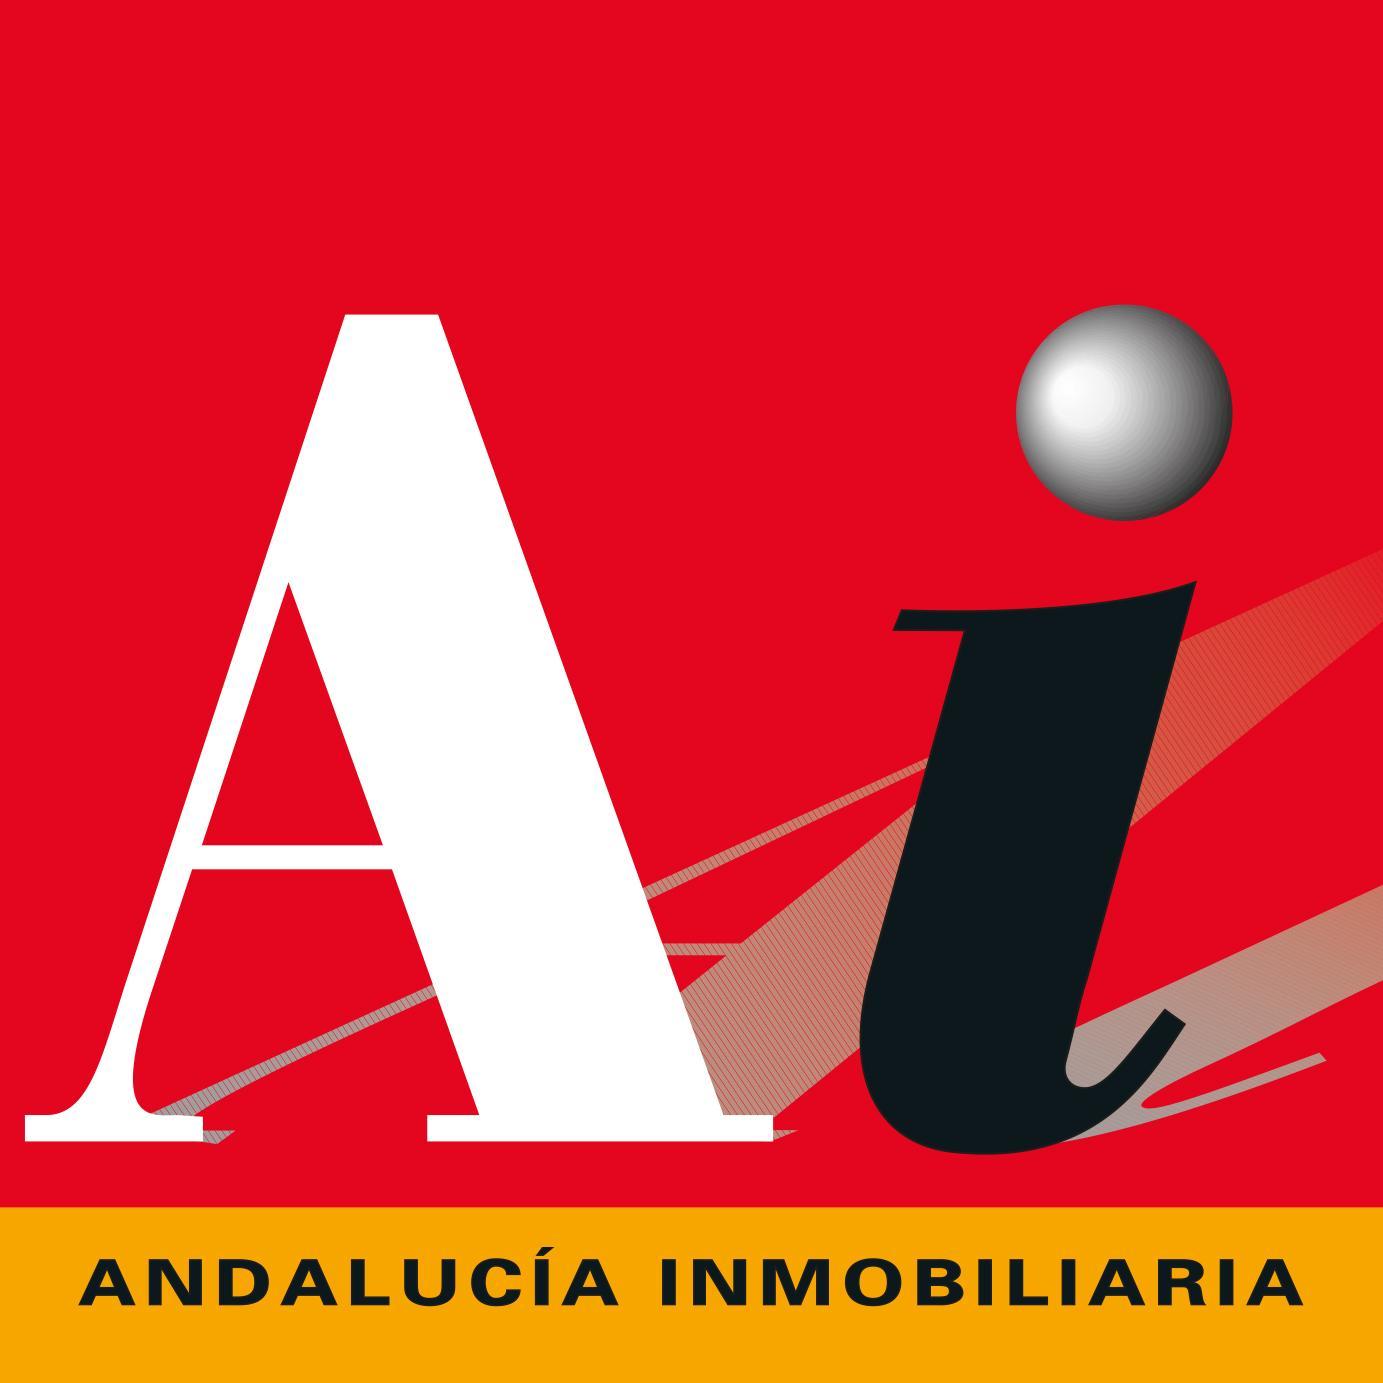 Andalucía Inmobiliaria, revista especializada en el sector inmobiliario y de la construcción. 22 años aportando valor y conocimiento. http://andaluciainmobiliar